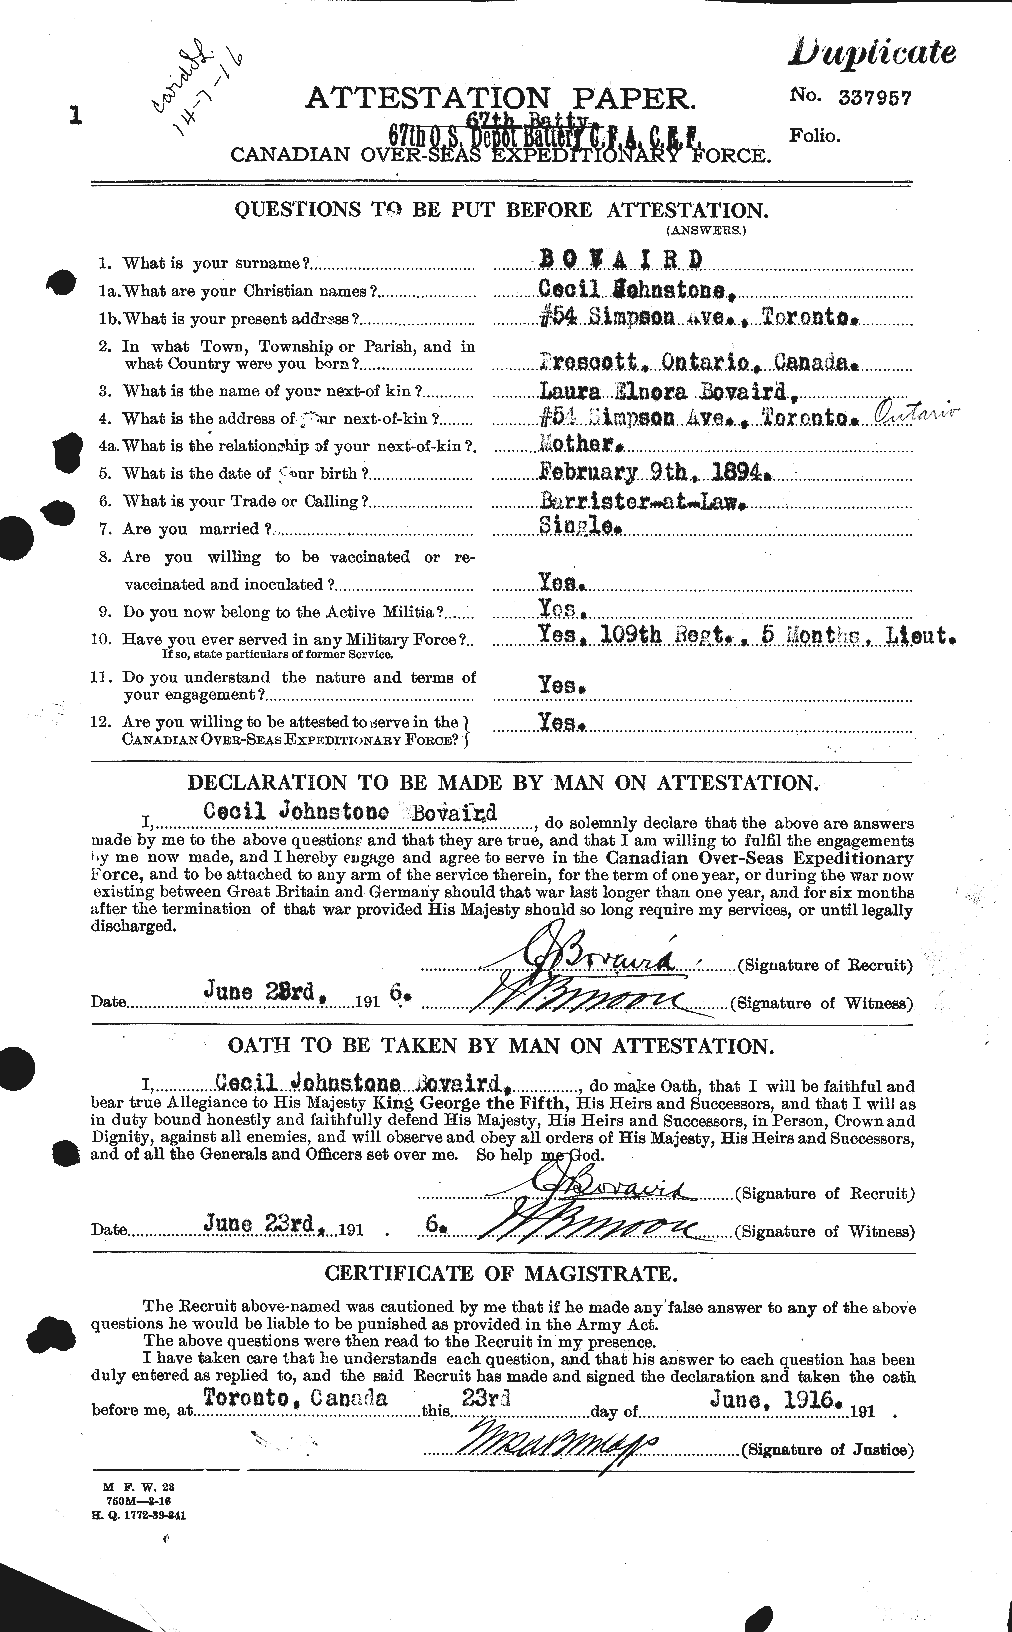 Dossiers du Personnel de la Première Guerre mondiale - CEC 254394a